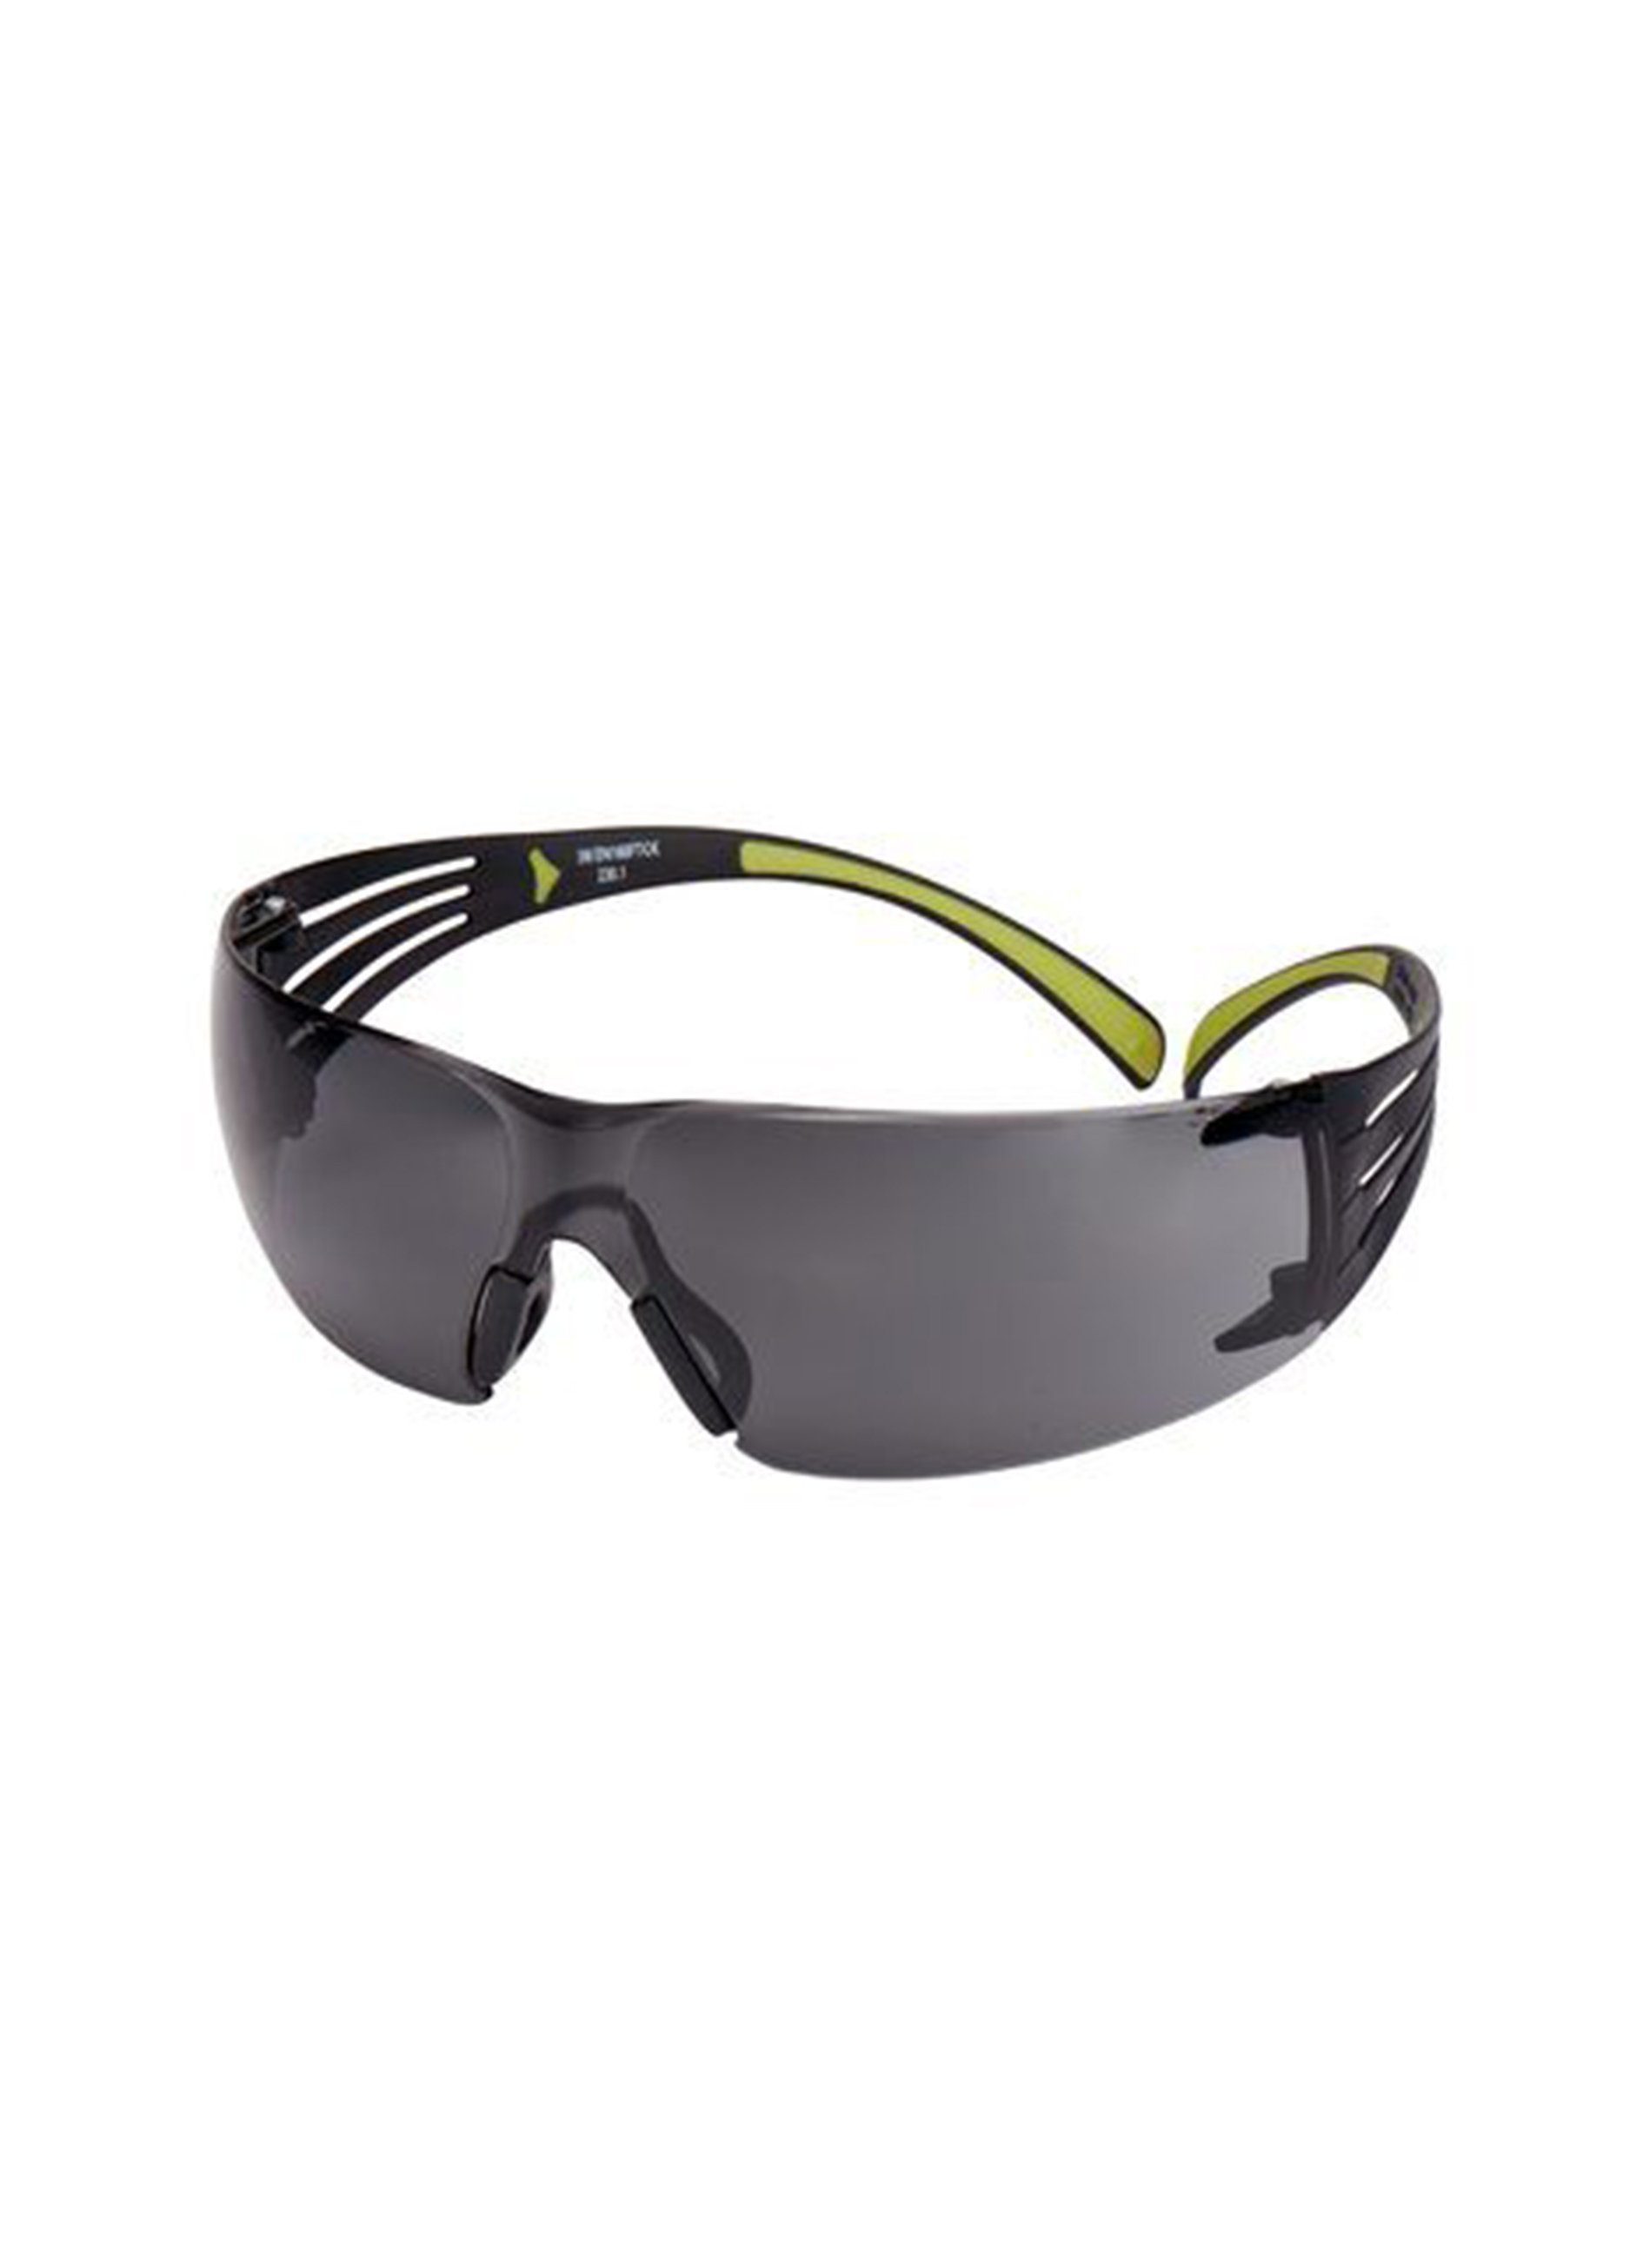 3M Brille 3M™ SecureFit™ Sichtfeld, leicht graue hervorragenden (19g) Schutz Schutzbrille, ein Scheibe, gutes 400 sehr Bügel, schwarz/grüne bietet Antikratz-/Antibeschlag-Beschichtung, sowie